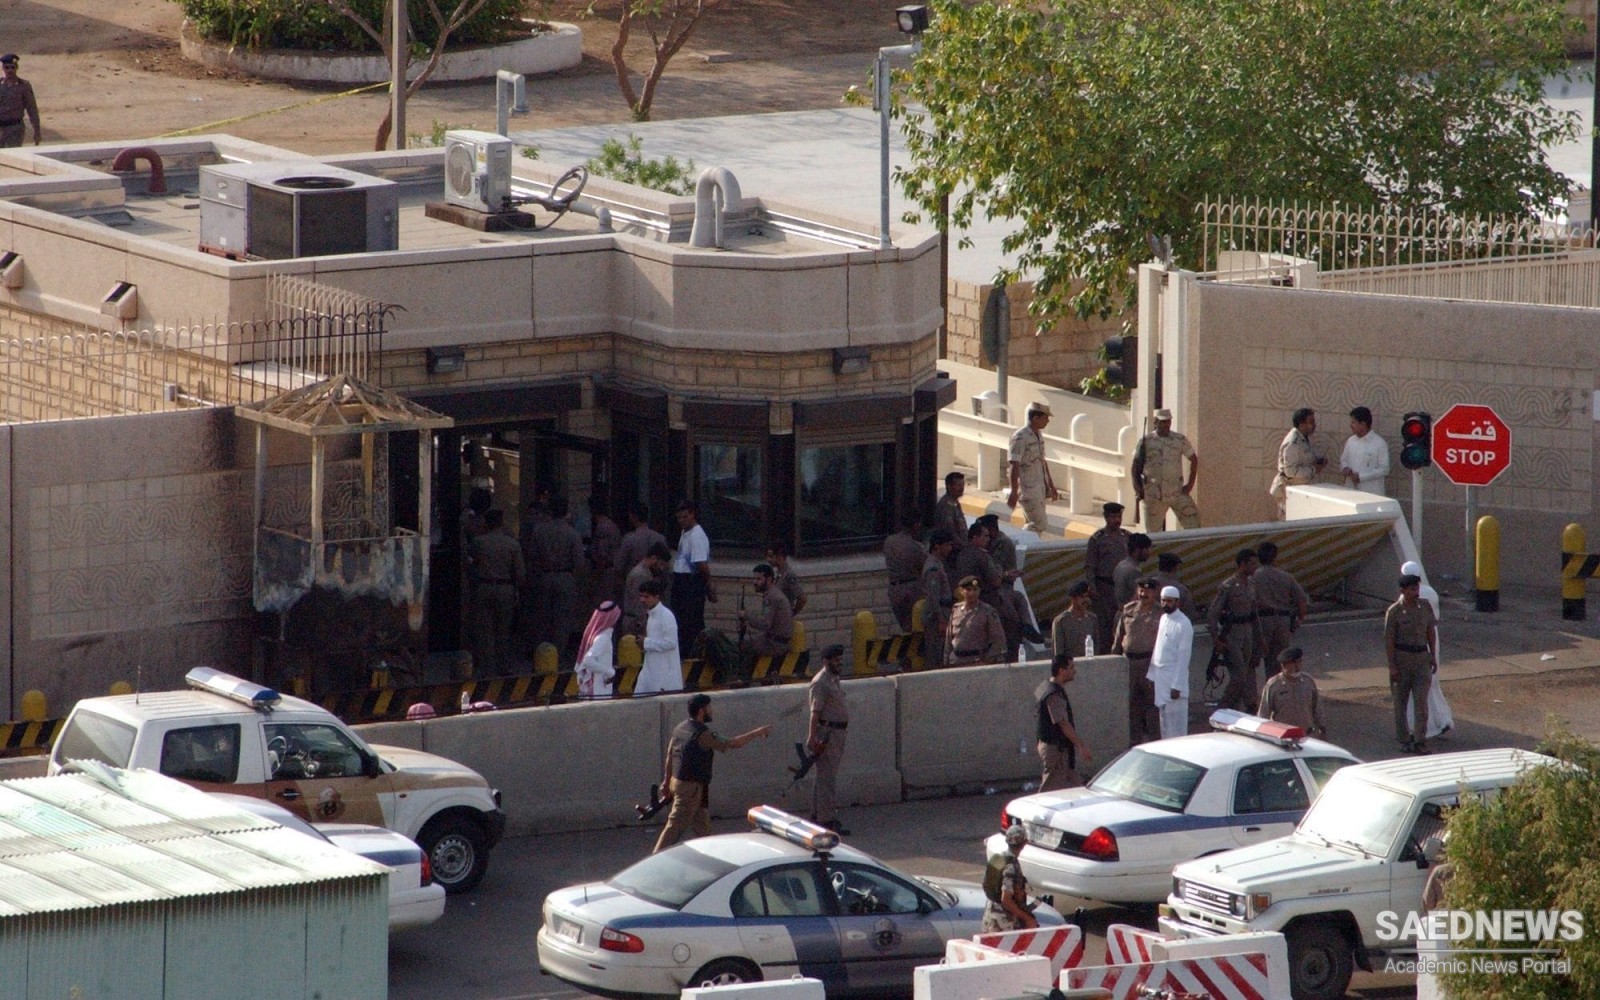 ब्रेकिंग न्यूज़: सऊदी अरब ने जेद्दा में आतंकवादी हमले की सूचना दी: 4 लोग मारे गए